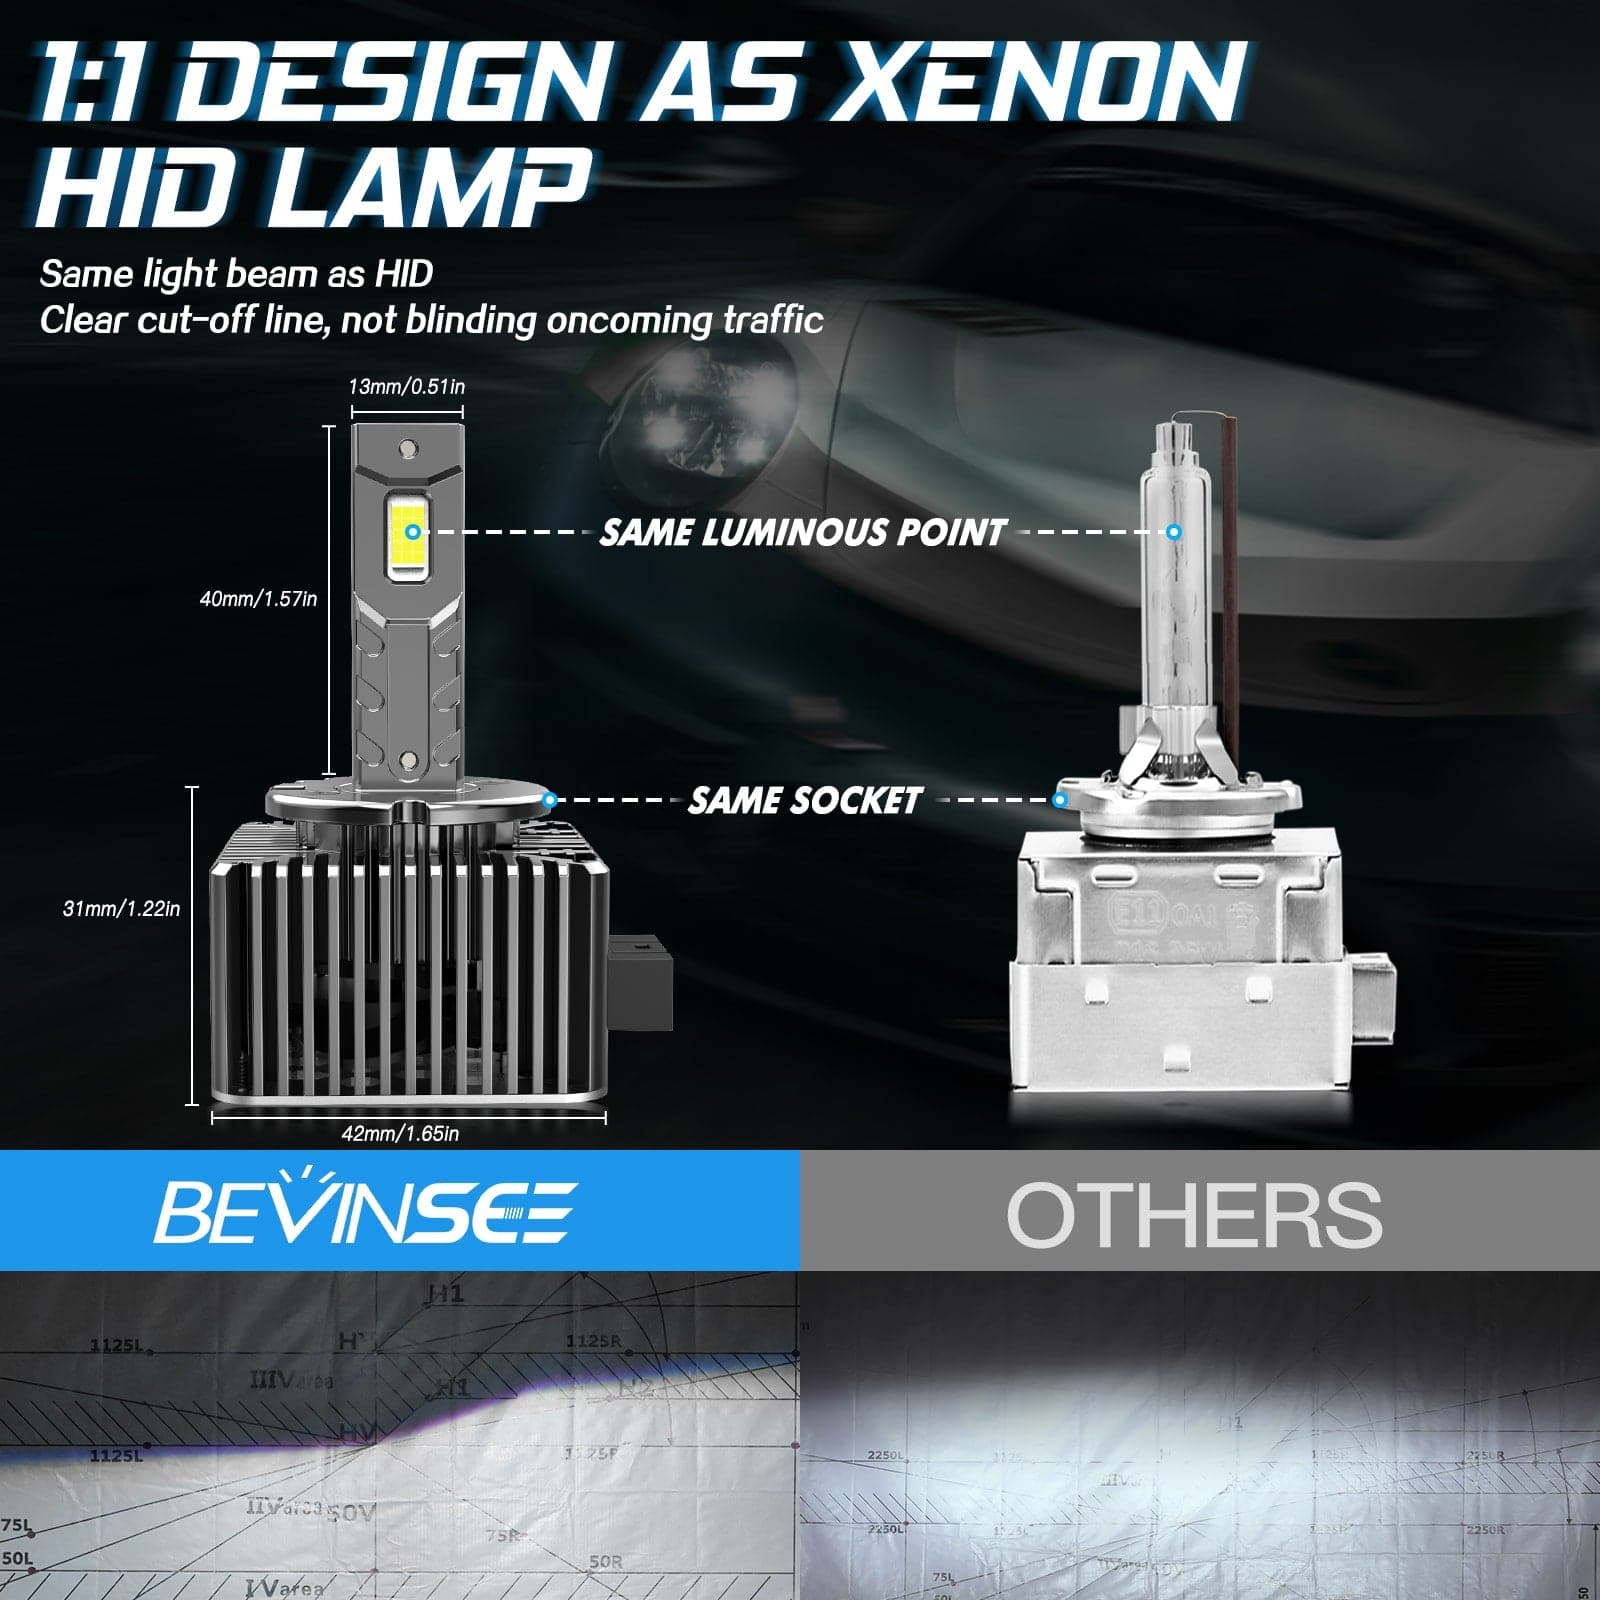 D3S HID Xenon Headlight Bulb 4300K 6000K White Pack of 2 – iLumen